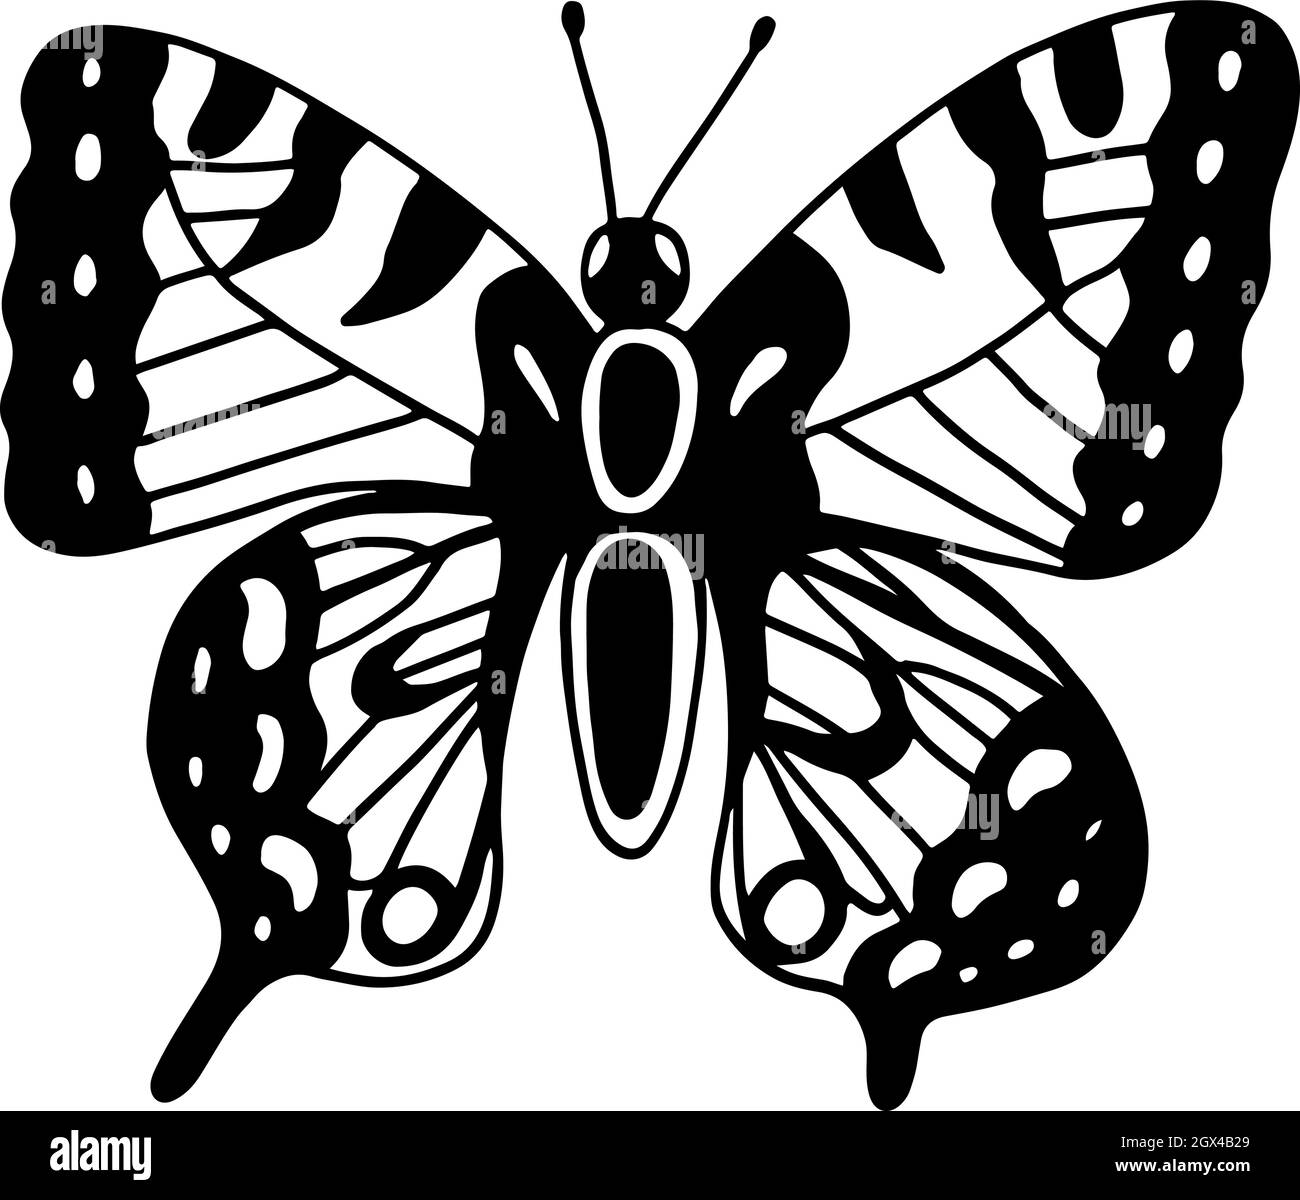 Schwalbenschwanz Schmetterling Linie Illustration. Doodle einfarbige Skizze des Insekts. Lustige niedliche Morpho Zeichnung. Vektorgrafiken. Stock Vektor